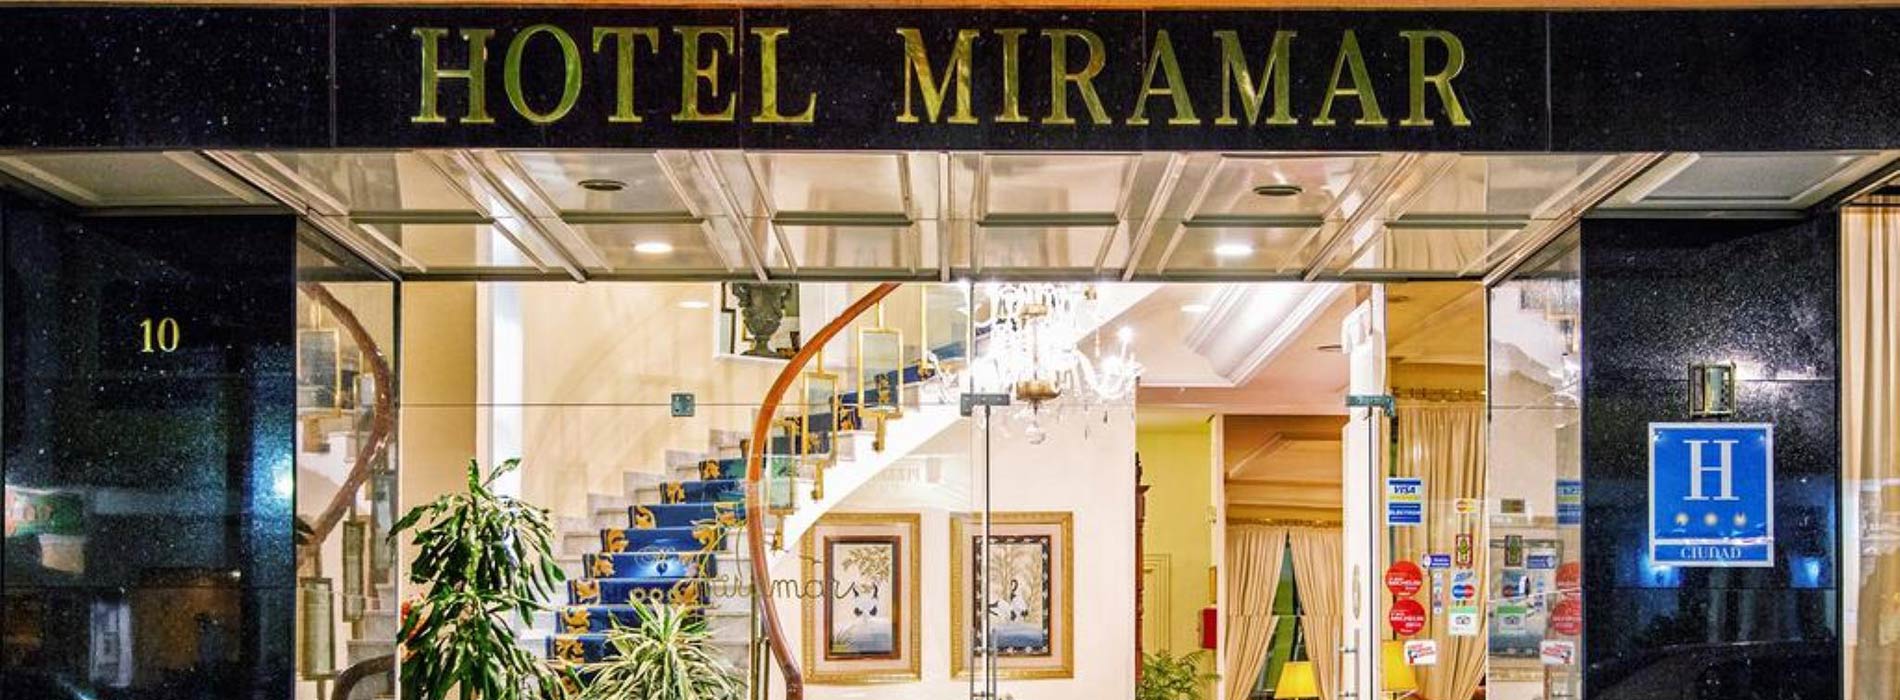 Hotel Miramar  galeria